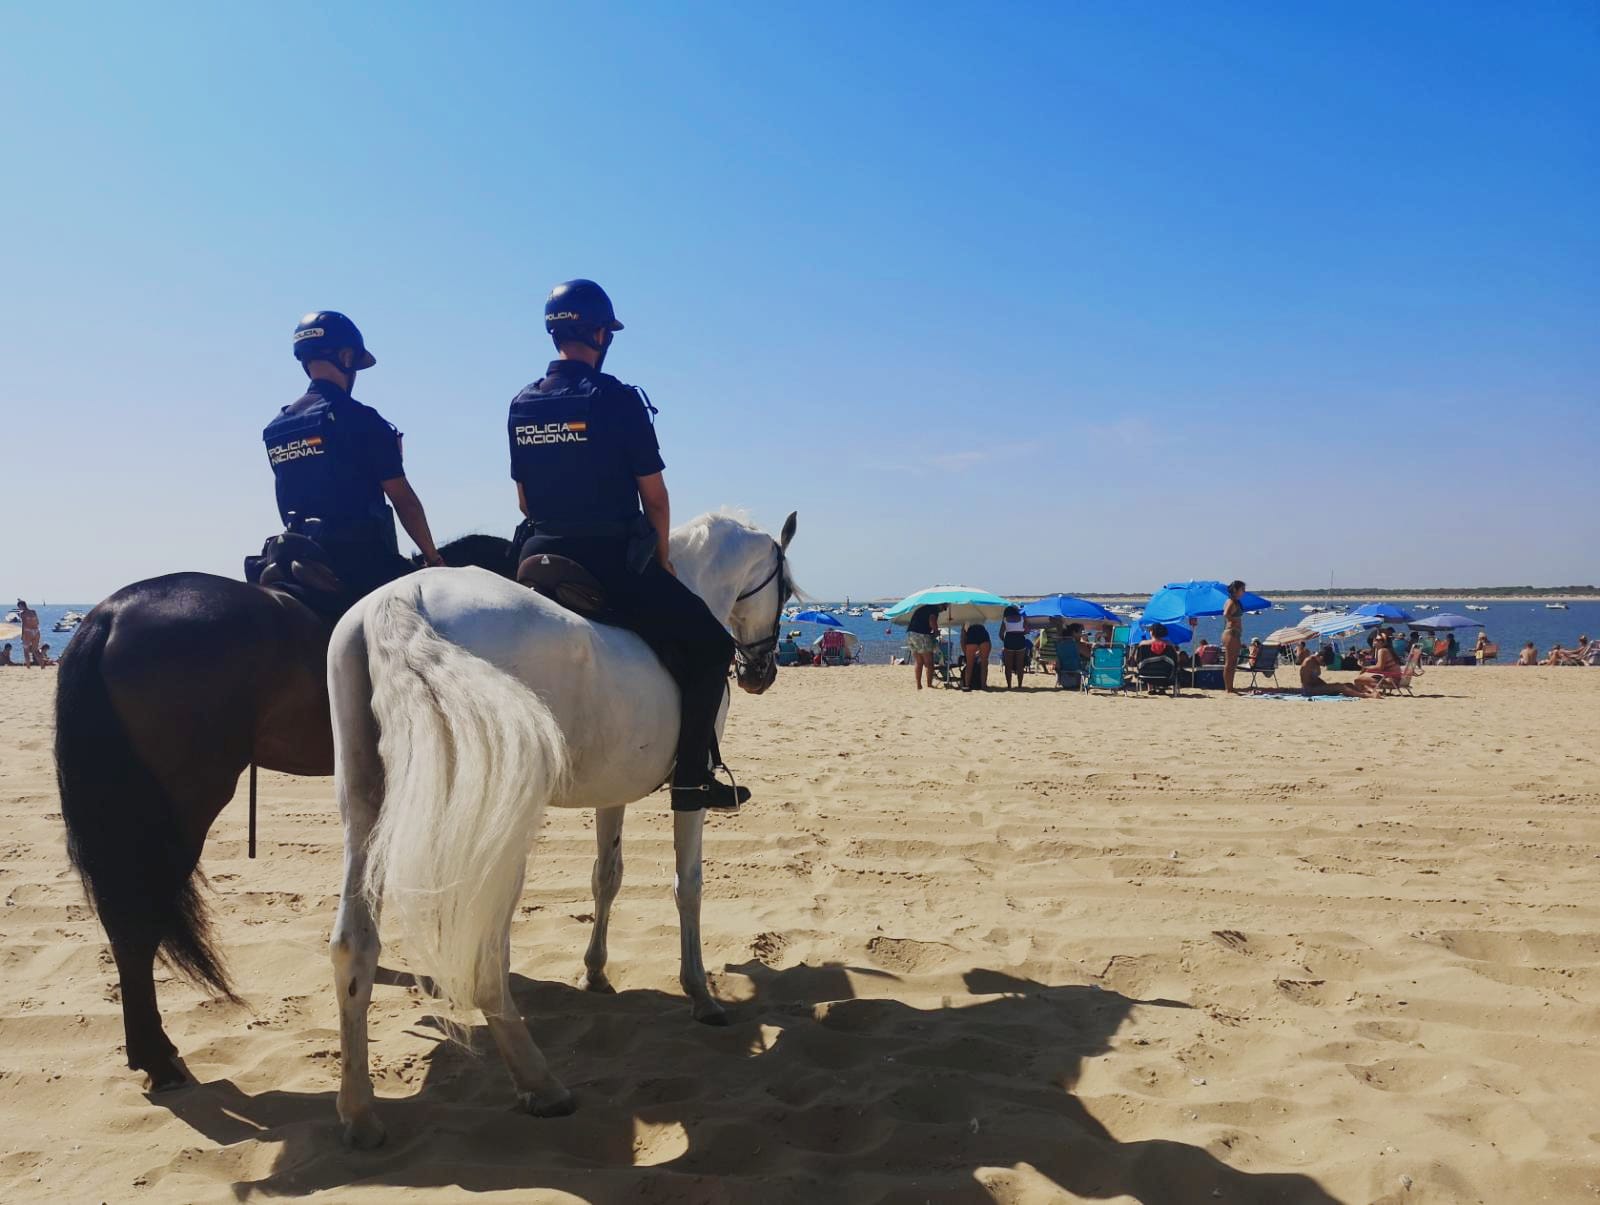 Dos policía montados a caballo vistos de espaldas, sobre la arena de la playa y unos bañistas al fondo.